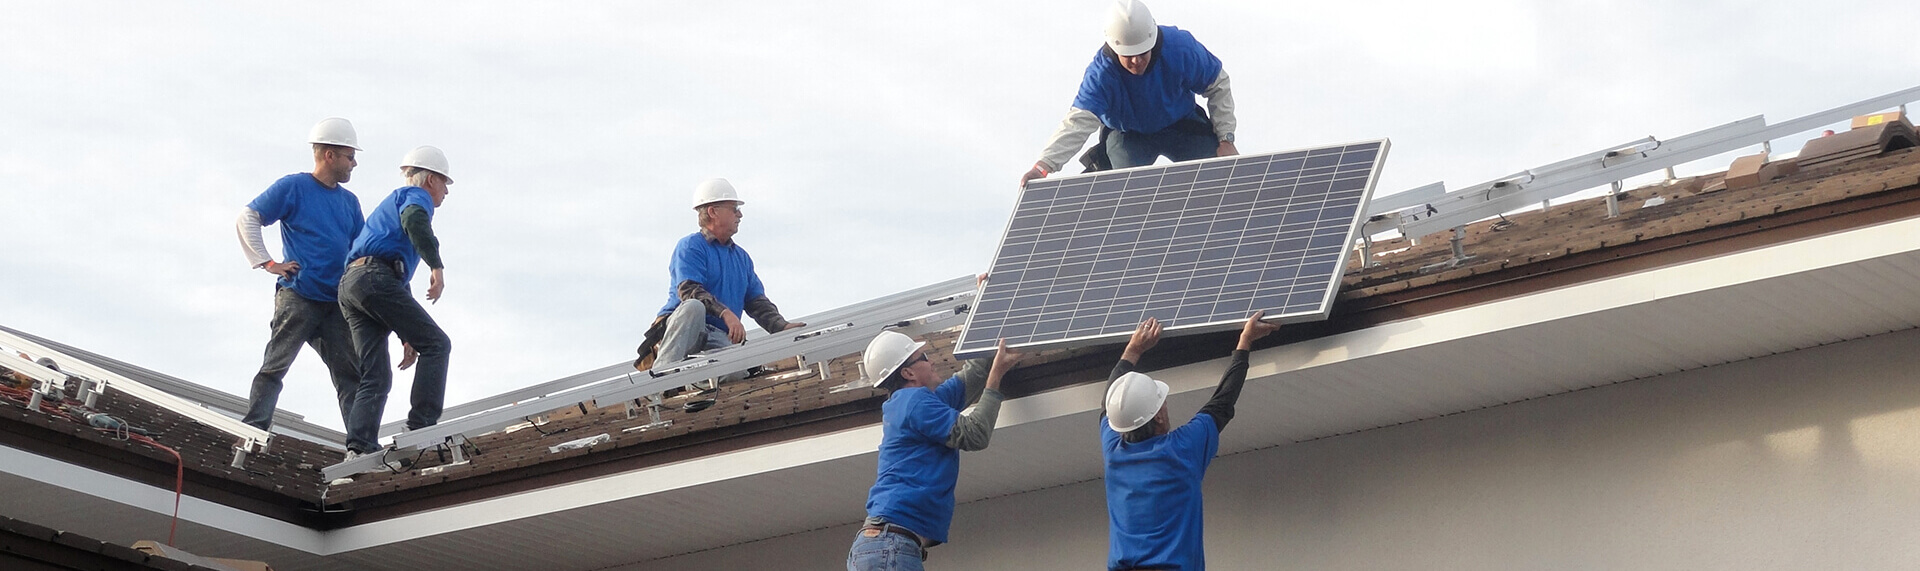 Мужчины устанавливают солнечные батареи на крыше